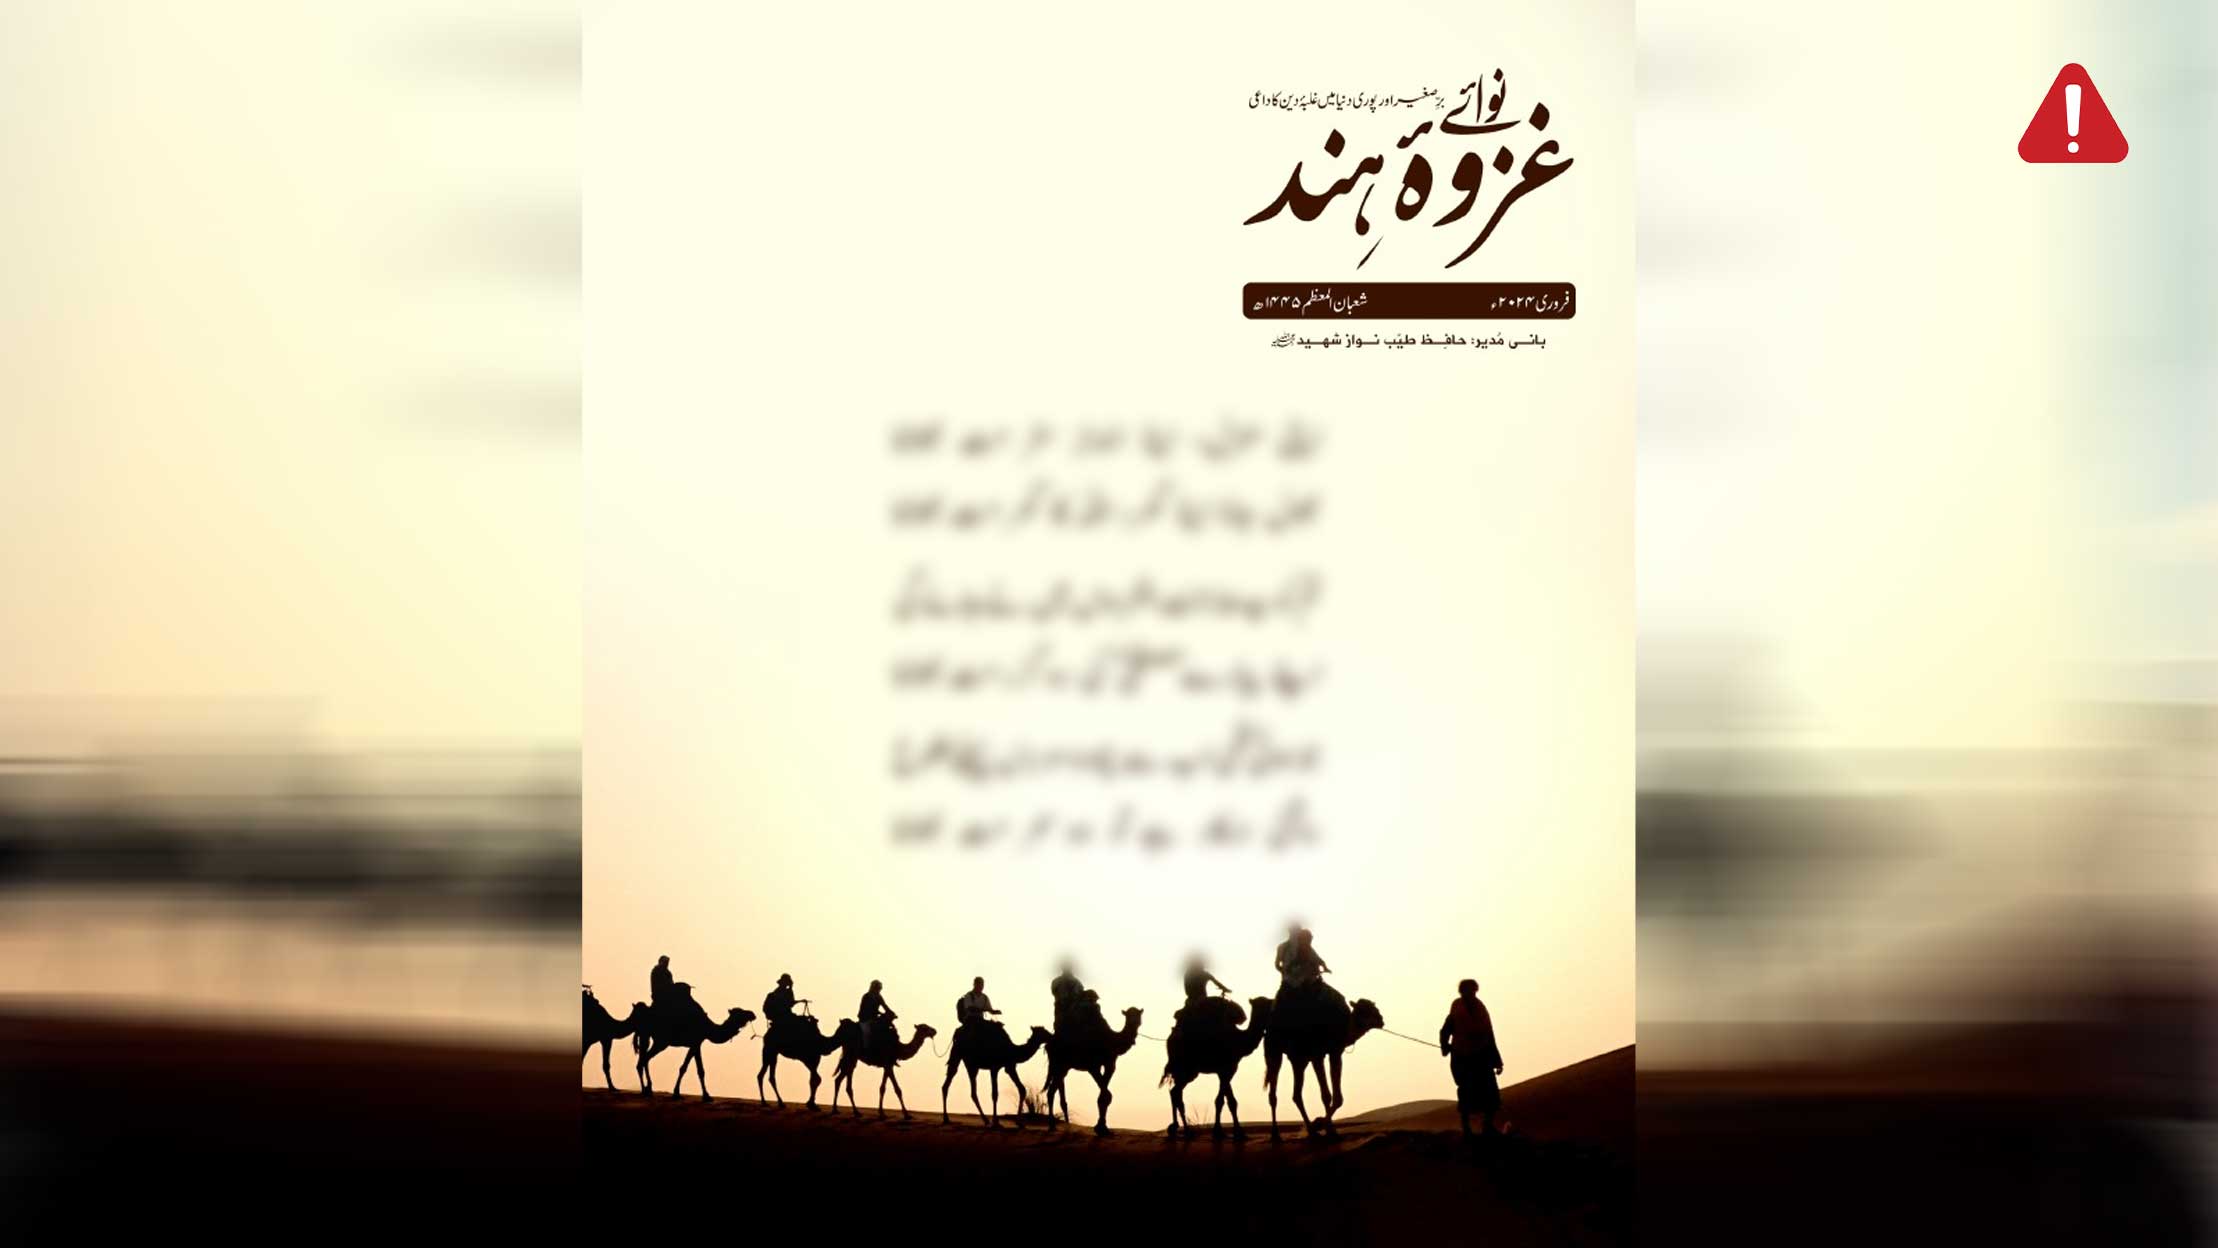 TKD MONITORING: AQIS Magazine (Nawa-e-Ghazwa-e-Hind), Volume 17, Issue 2